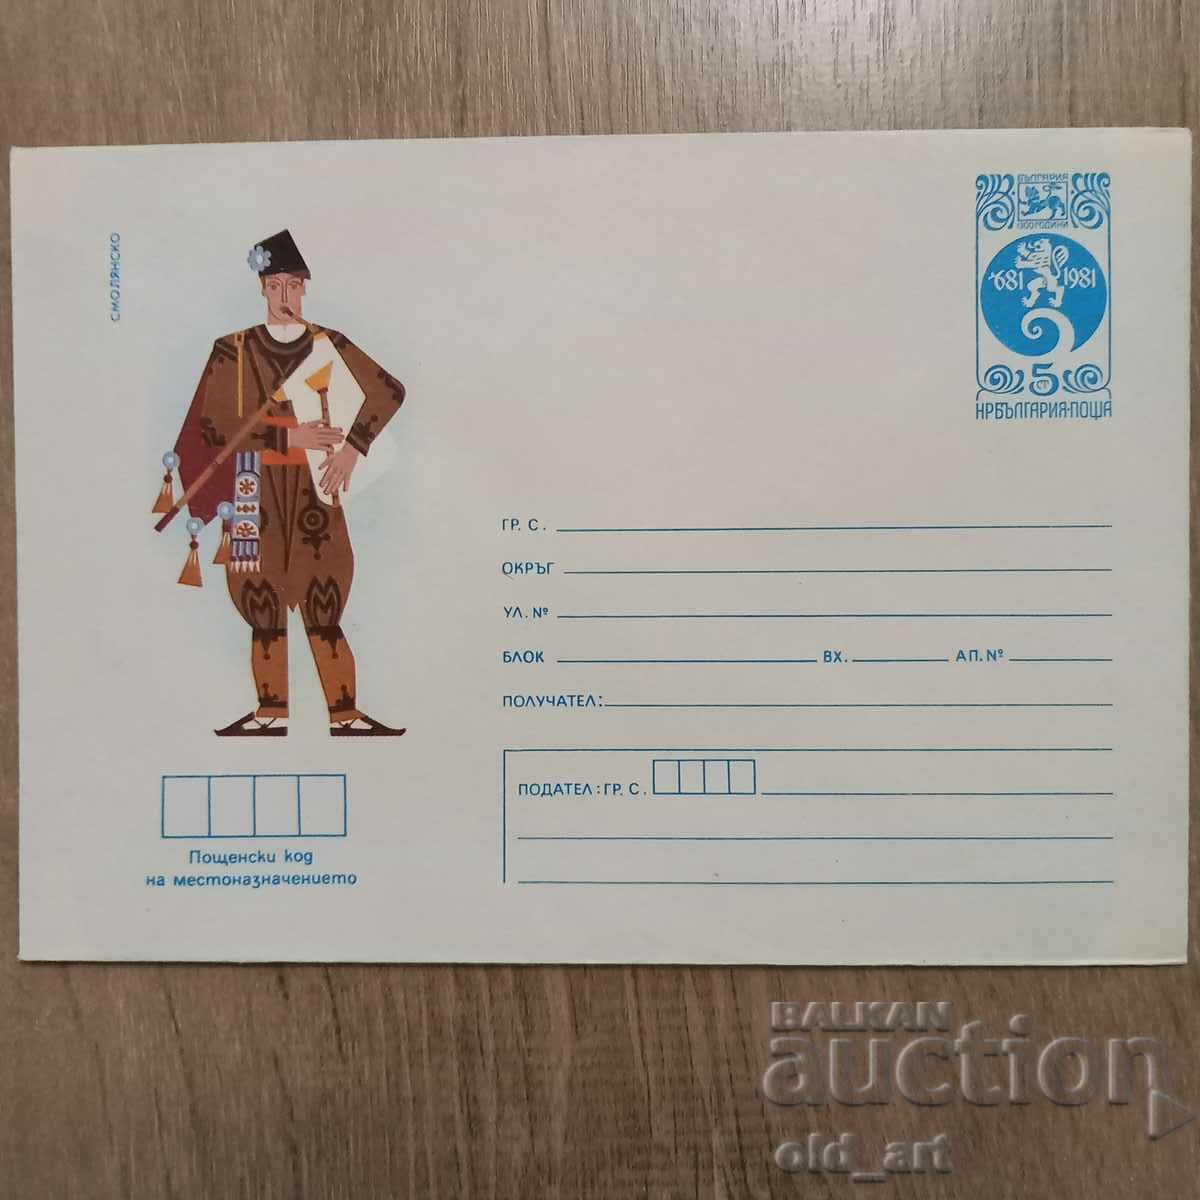 Postal envelope - Folk costumes - Smolyansko